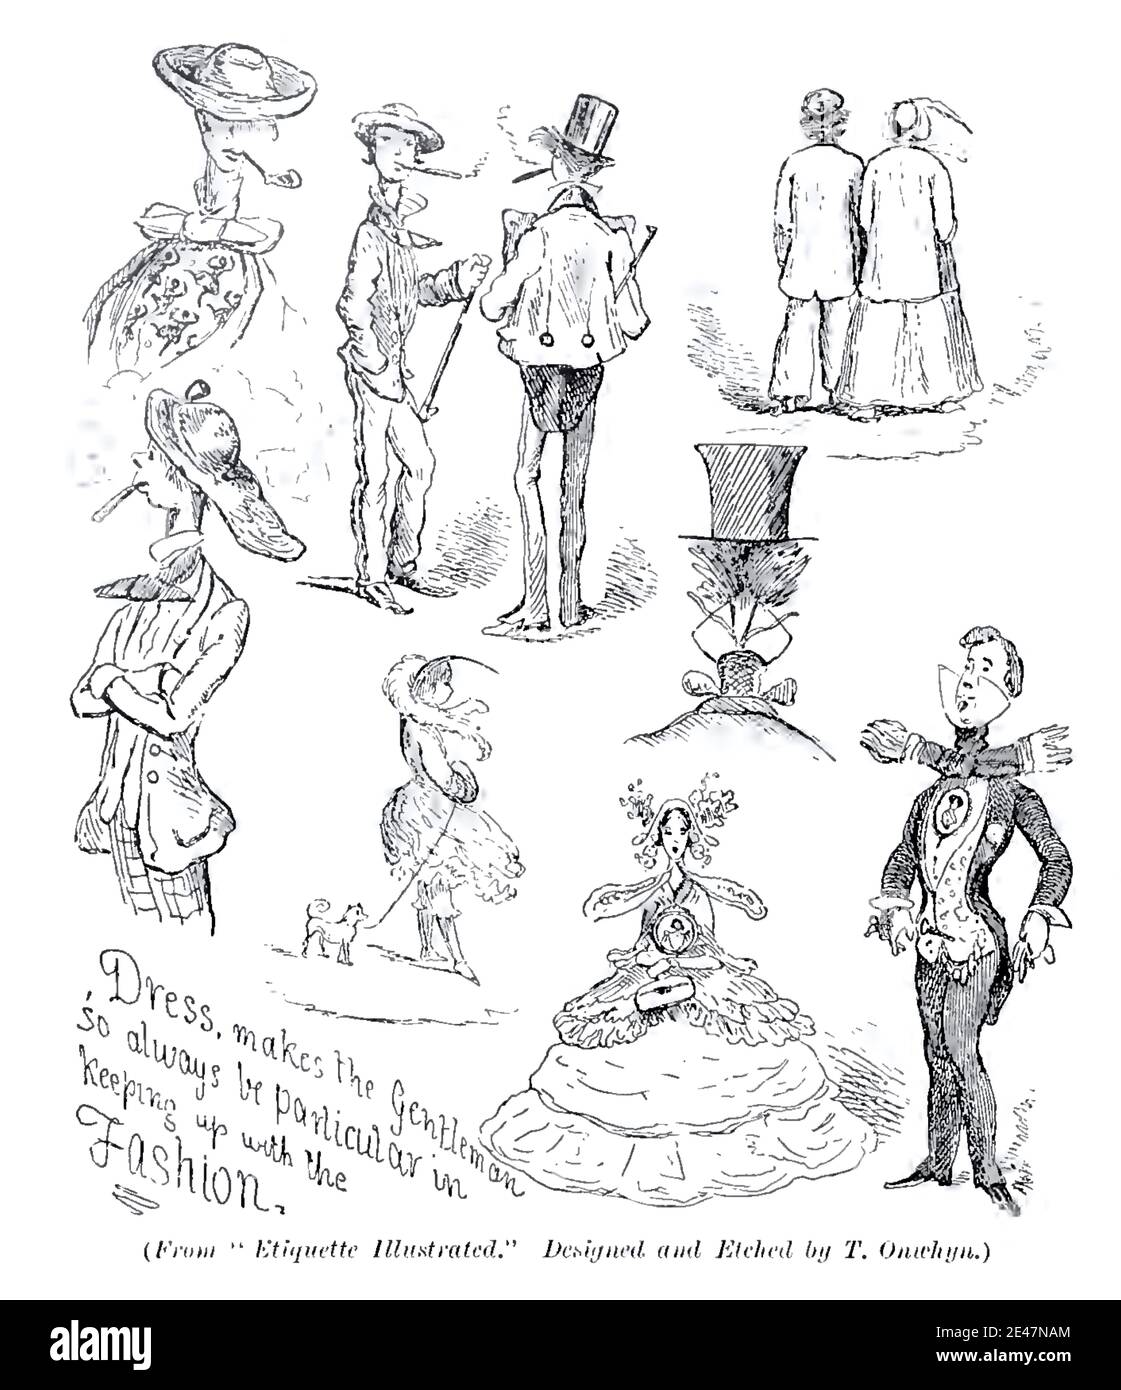 Illustration satirique Thomas Onwhyn vintage donnant des conseils au gentleman sur la forme correcte de robe à porter pour suivre la mode. Banque D'Images